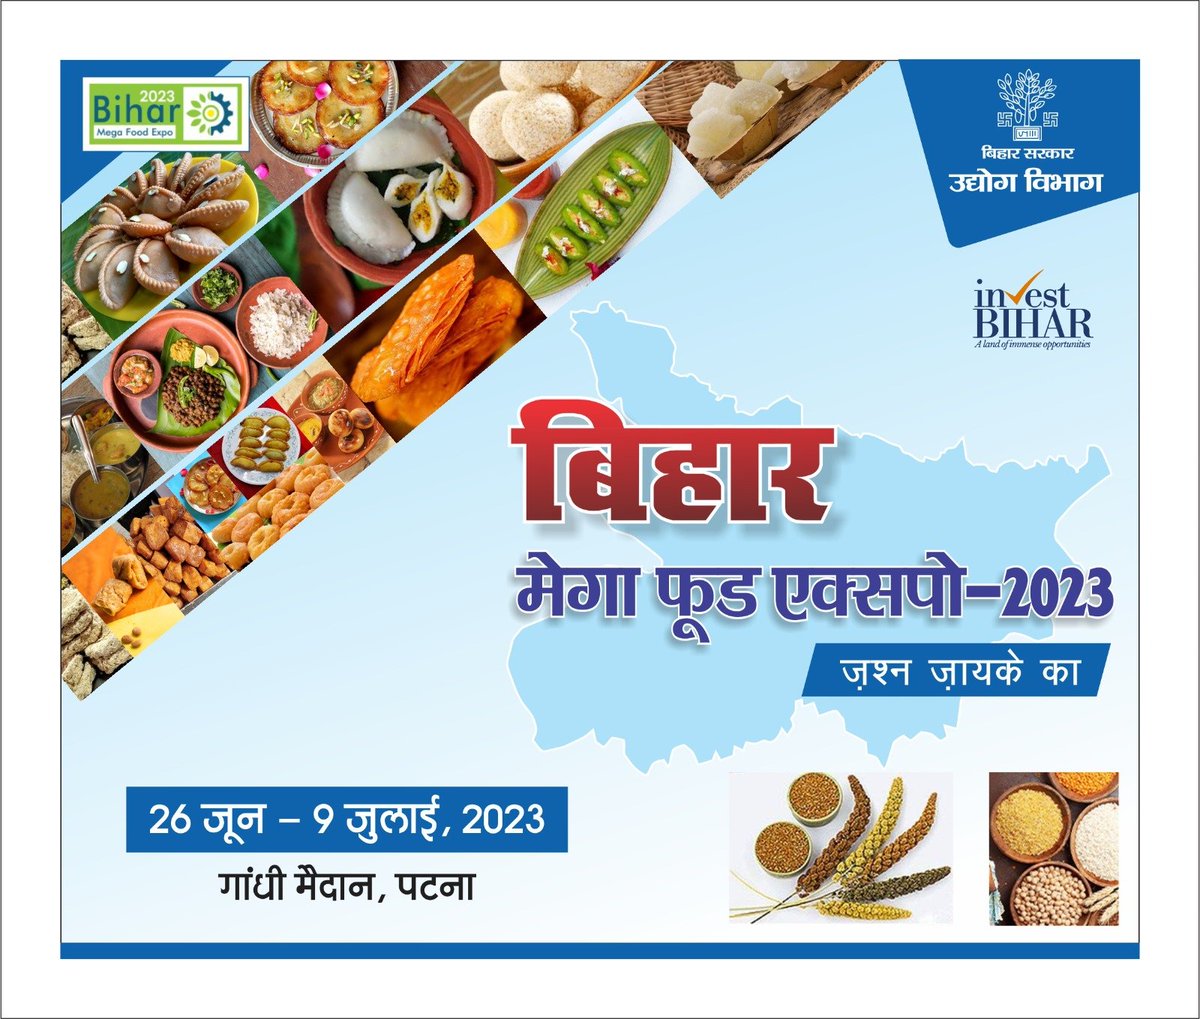 Biggest Mega Food Expo In Bihar 2023.

#food 
#foodofbihar
#foodfestival #biharifood
#IndustriesBihar
#BIHARHAITAIYAR
Samir Mahaseth